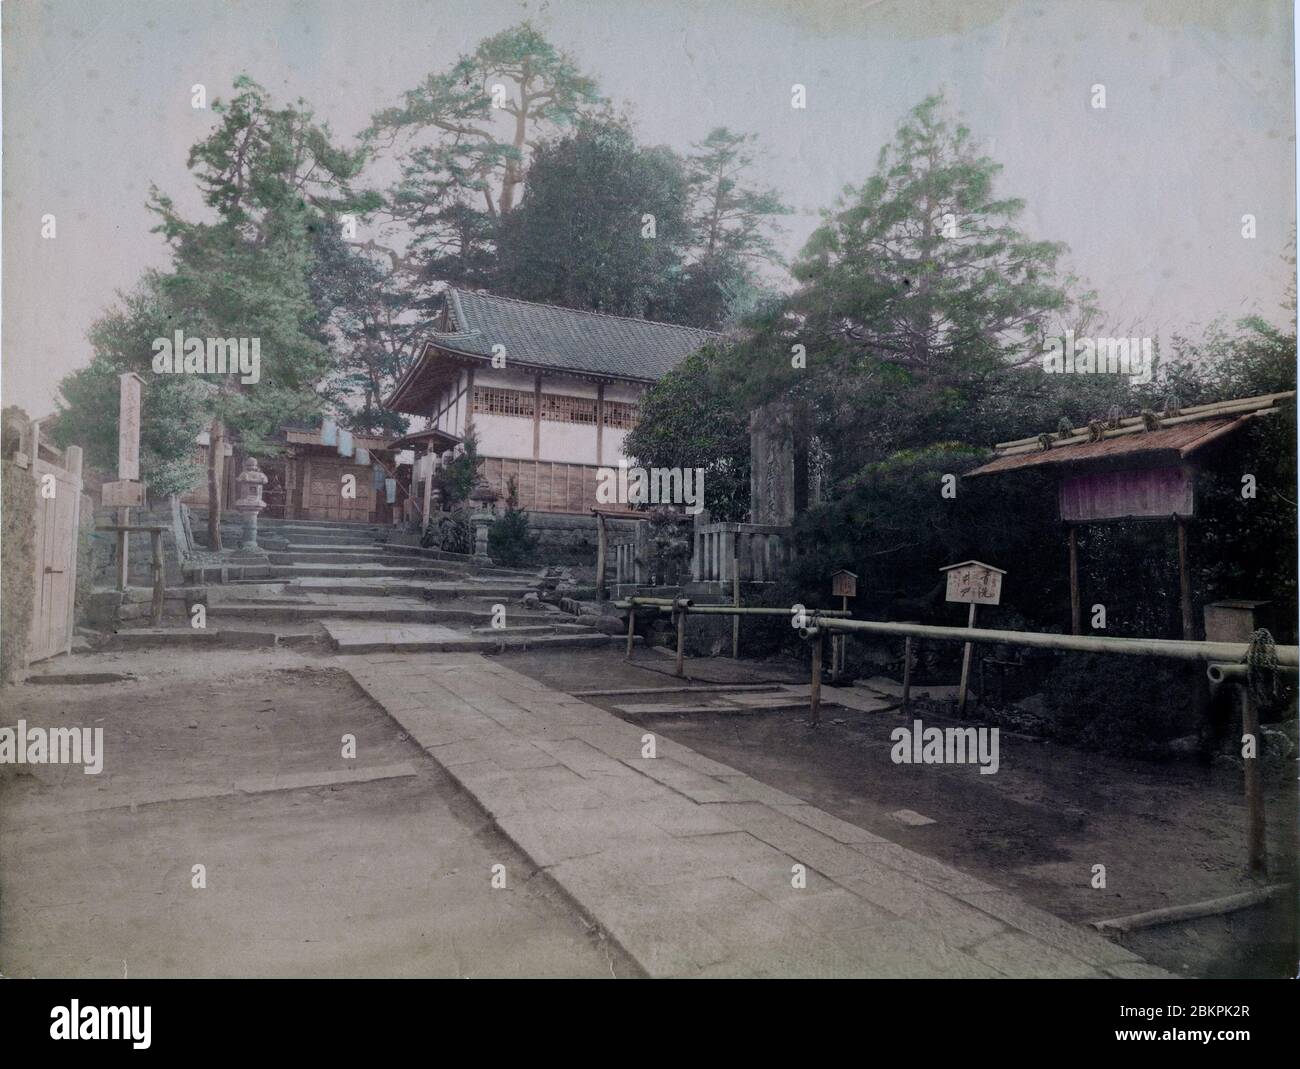 [ 1890 Japon - Temple japonais ] — Temple bouddhiste. photographie d'albumine vintage du xixe siècle. Banque D'Images